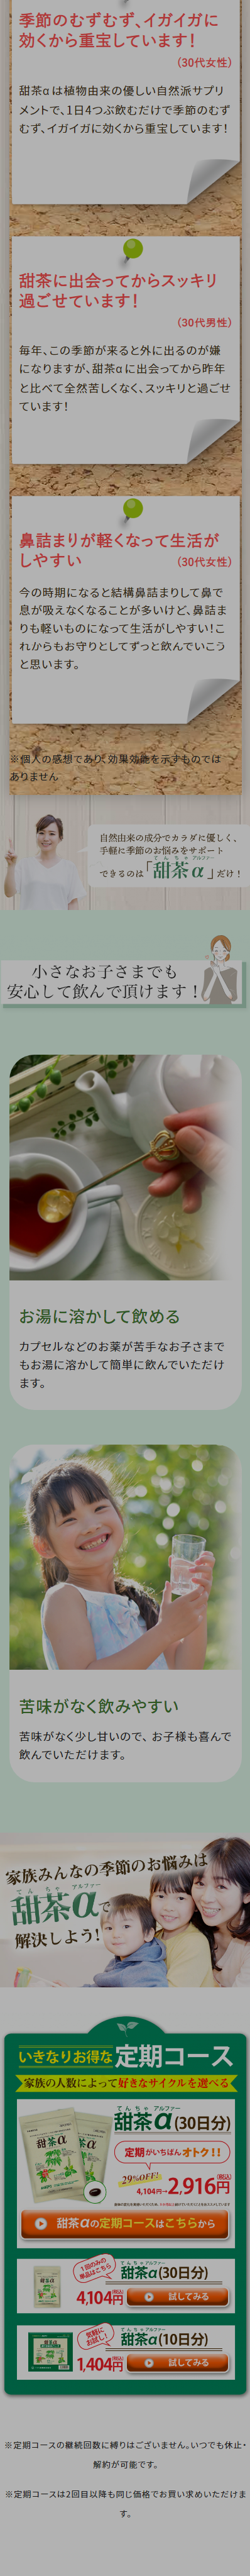 甜茶α_sp_2